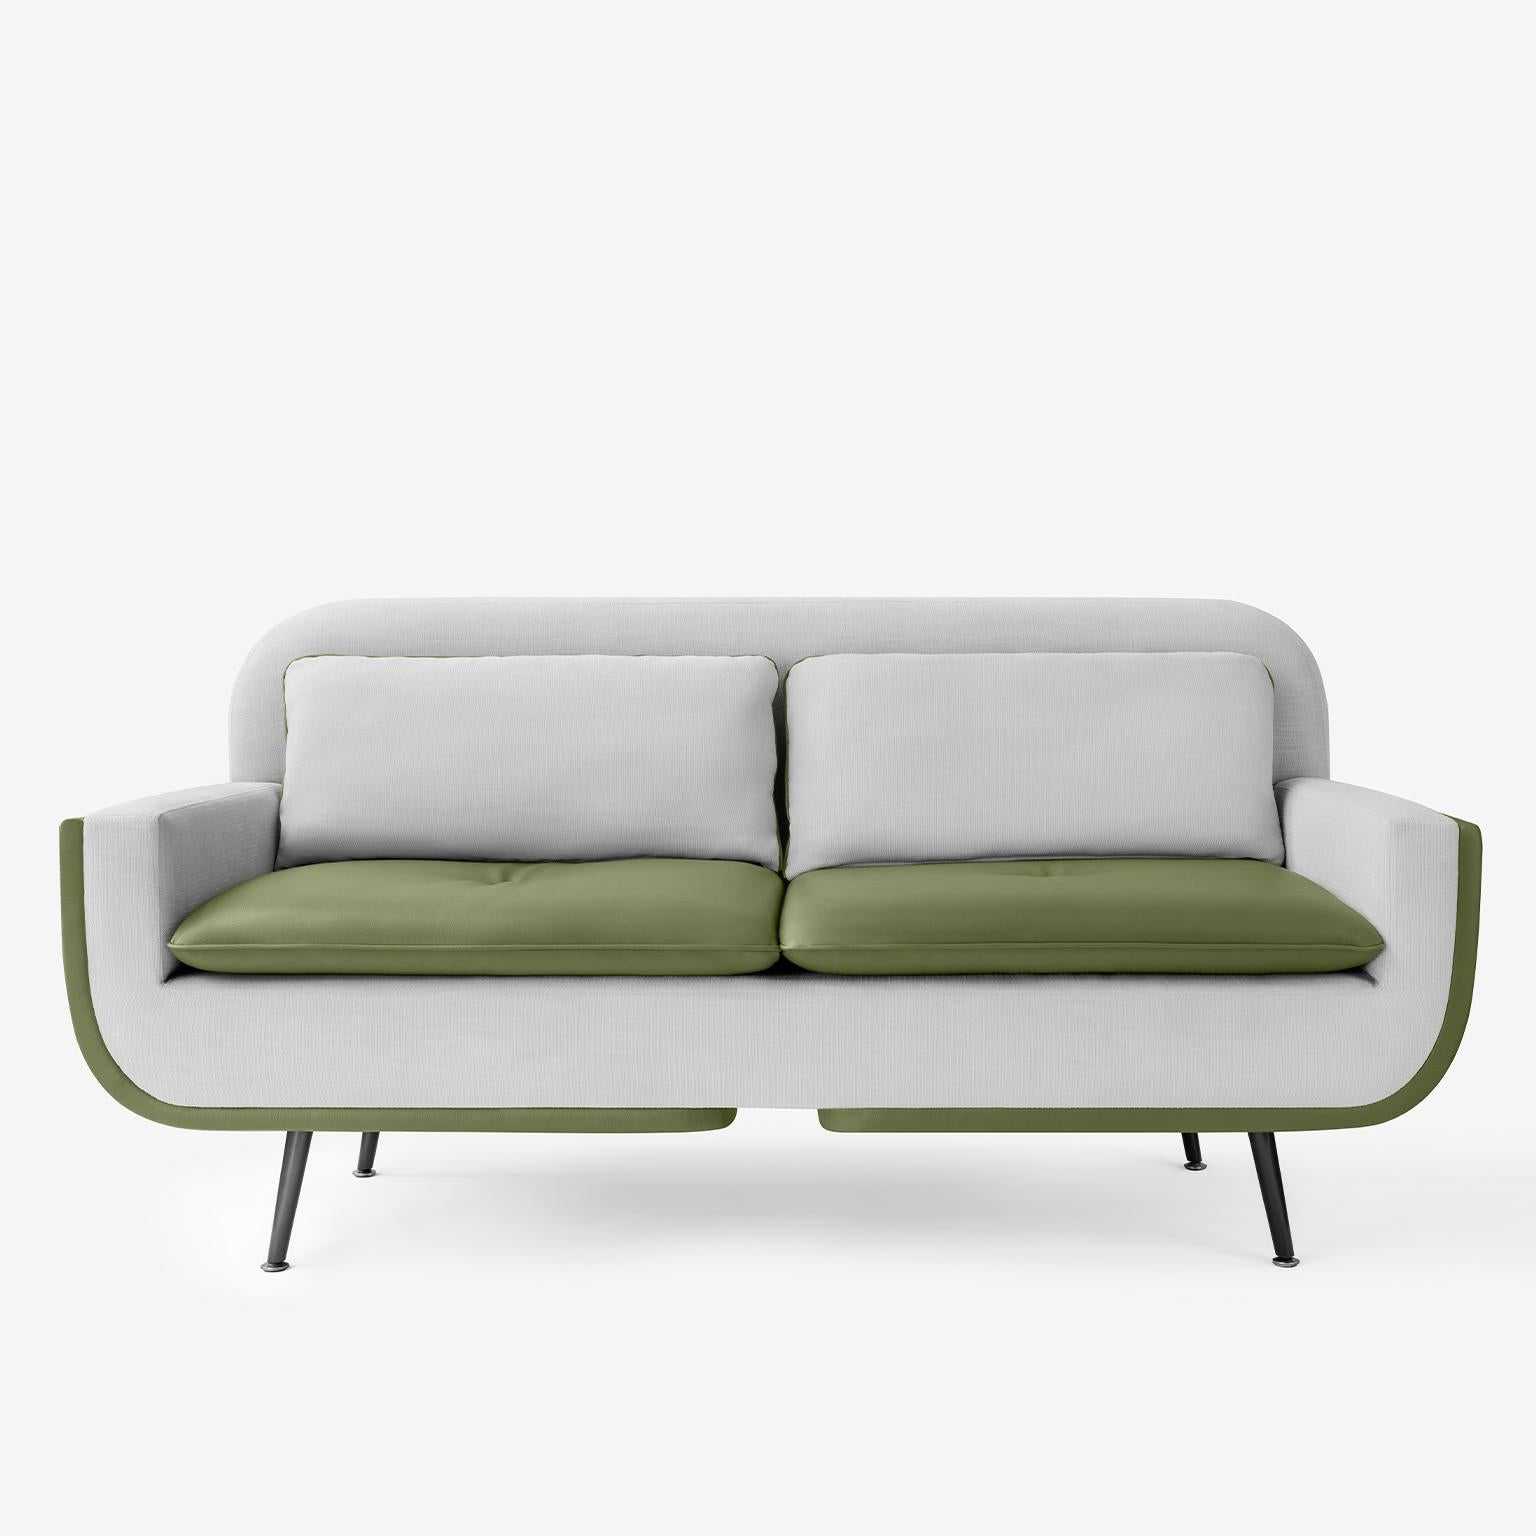 Conçu pour maximiser à la fois la forme et le confort, le canapé deux places Up&Up ajoutera un style unique à votre espace.

Vous pouvez combiner différents tissus pour le dos et le devant du canapé ou choisir un seul tissu. 

-Rembourrage à